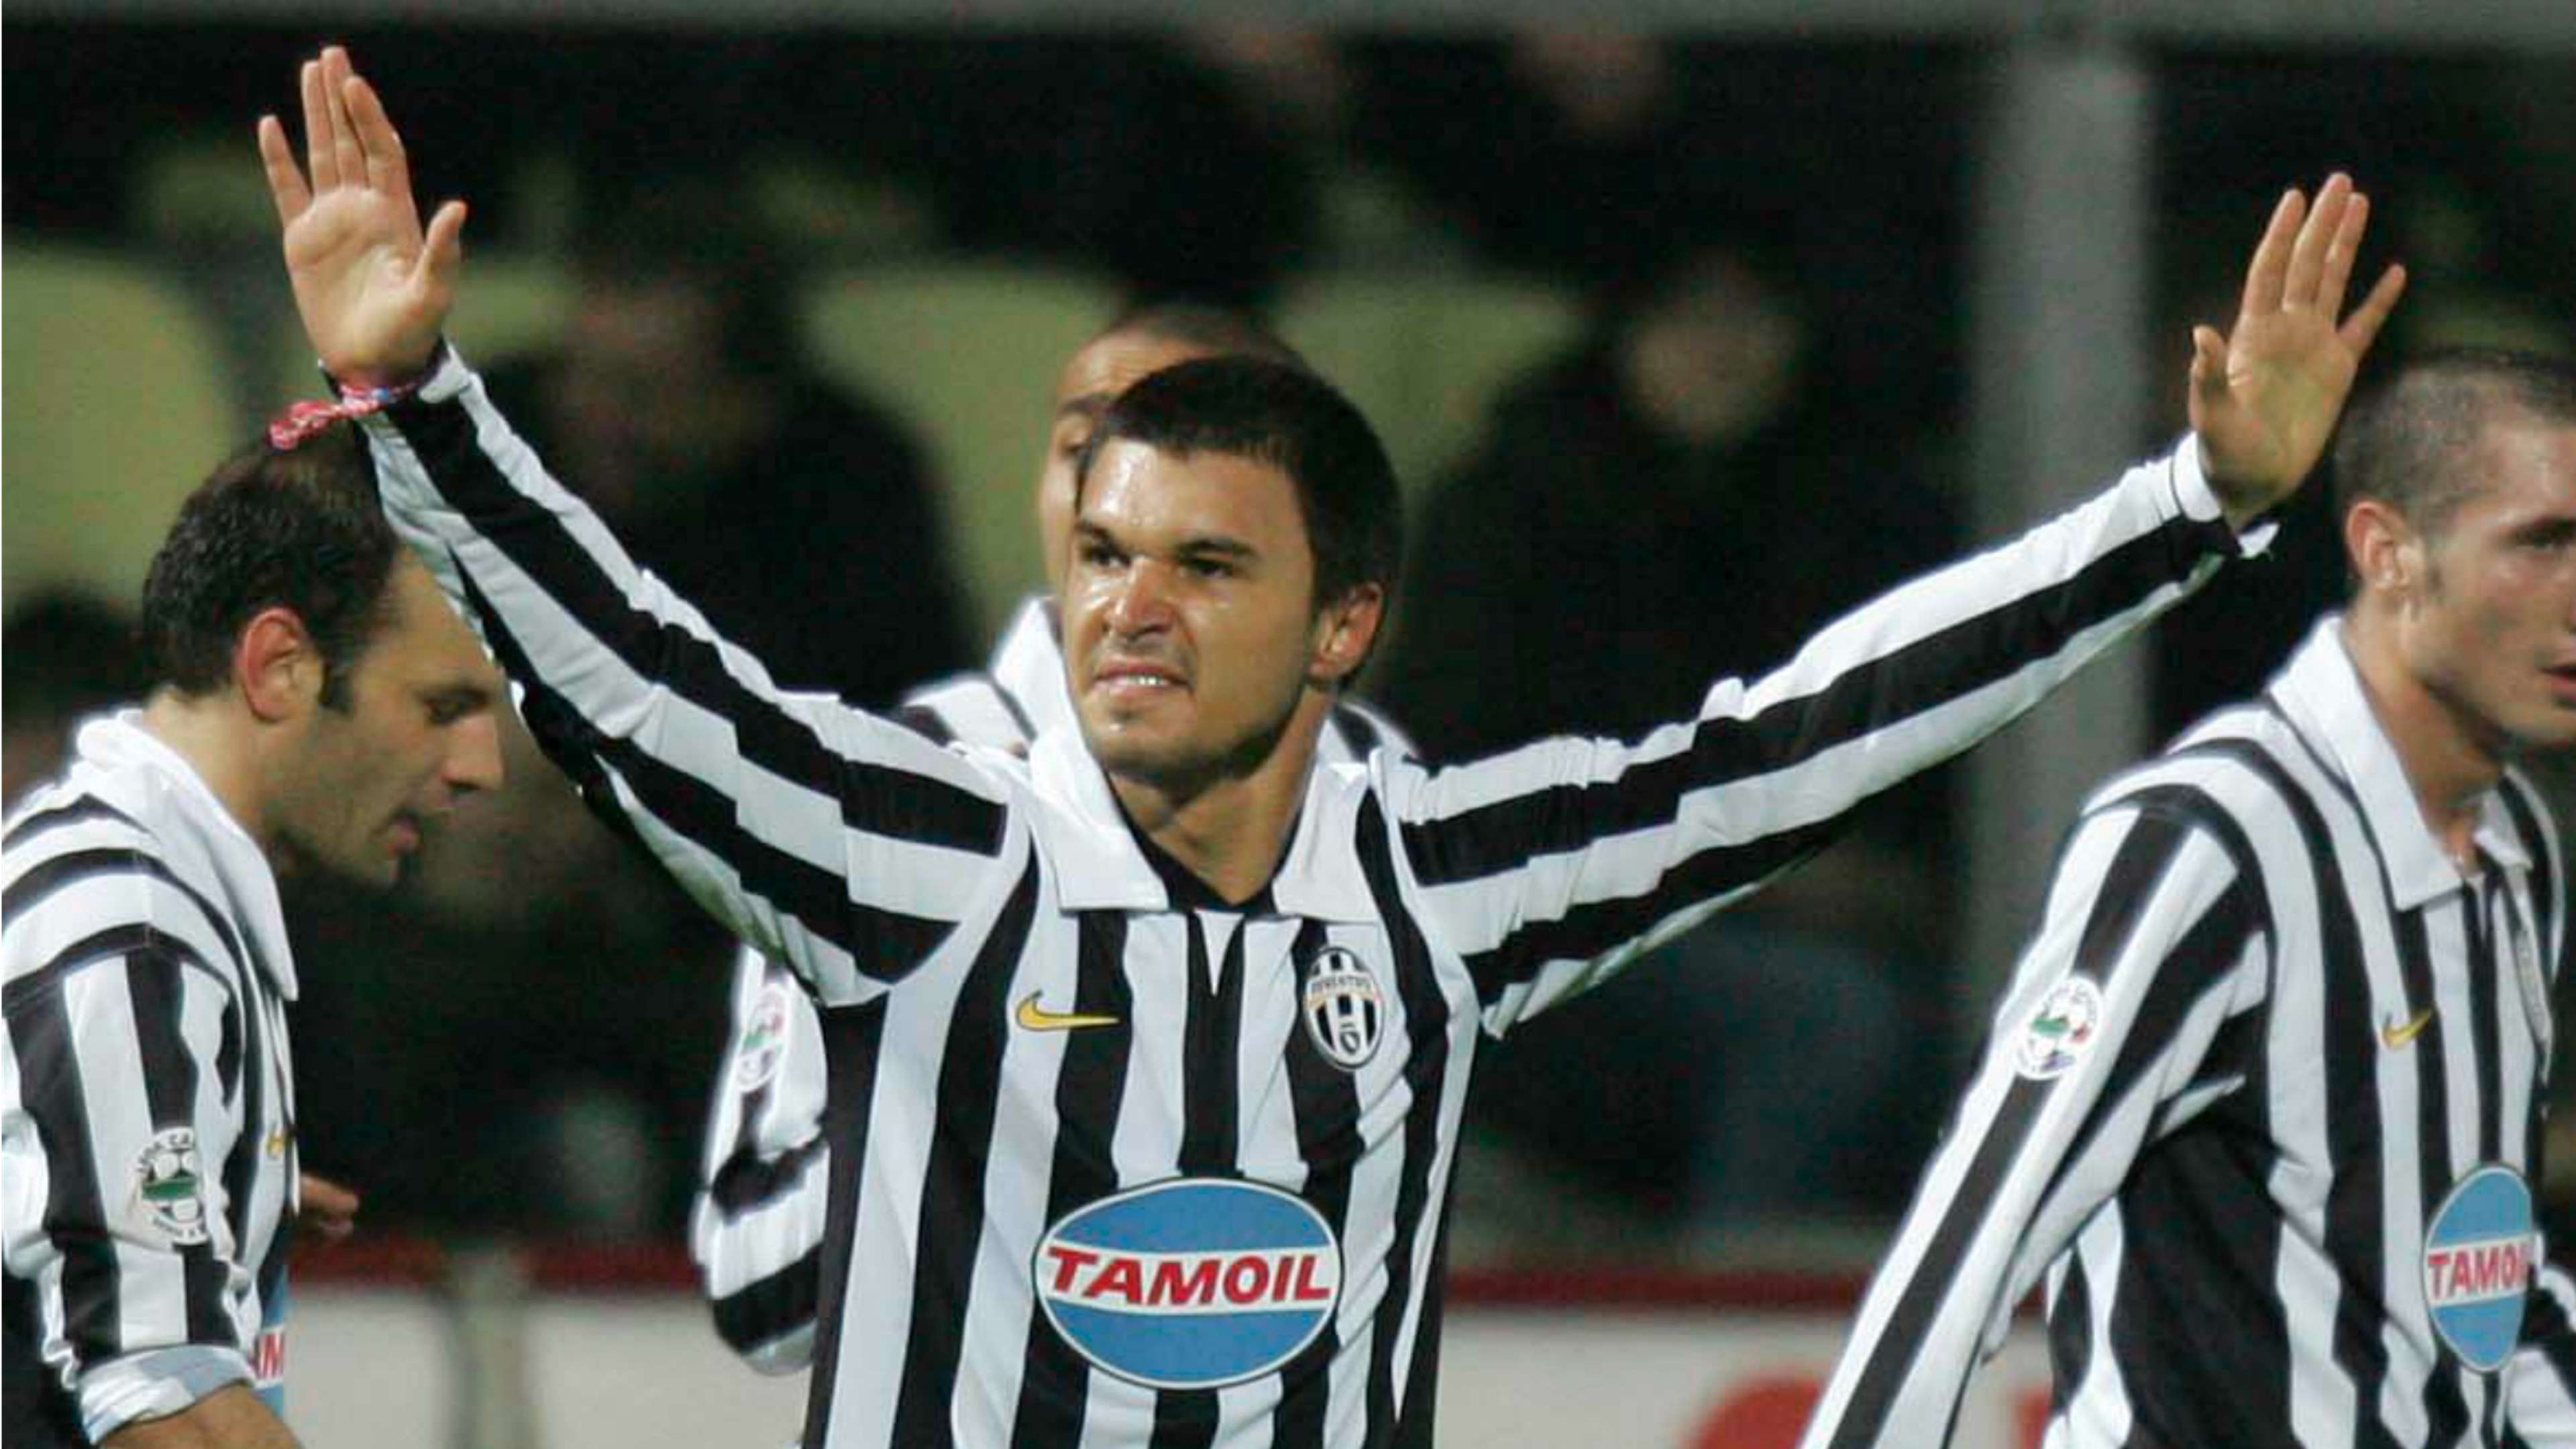 Bojinov Bozhinov Juventus 2006